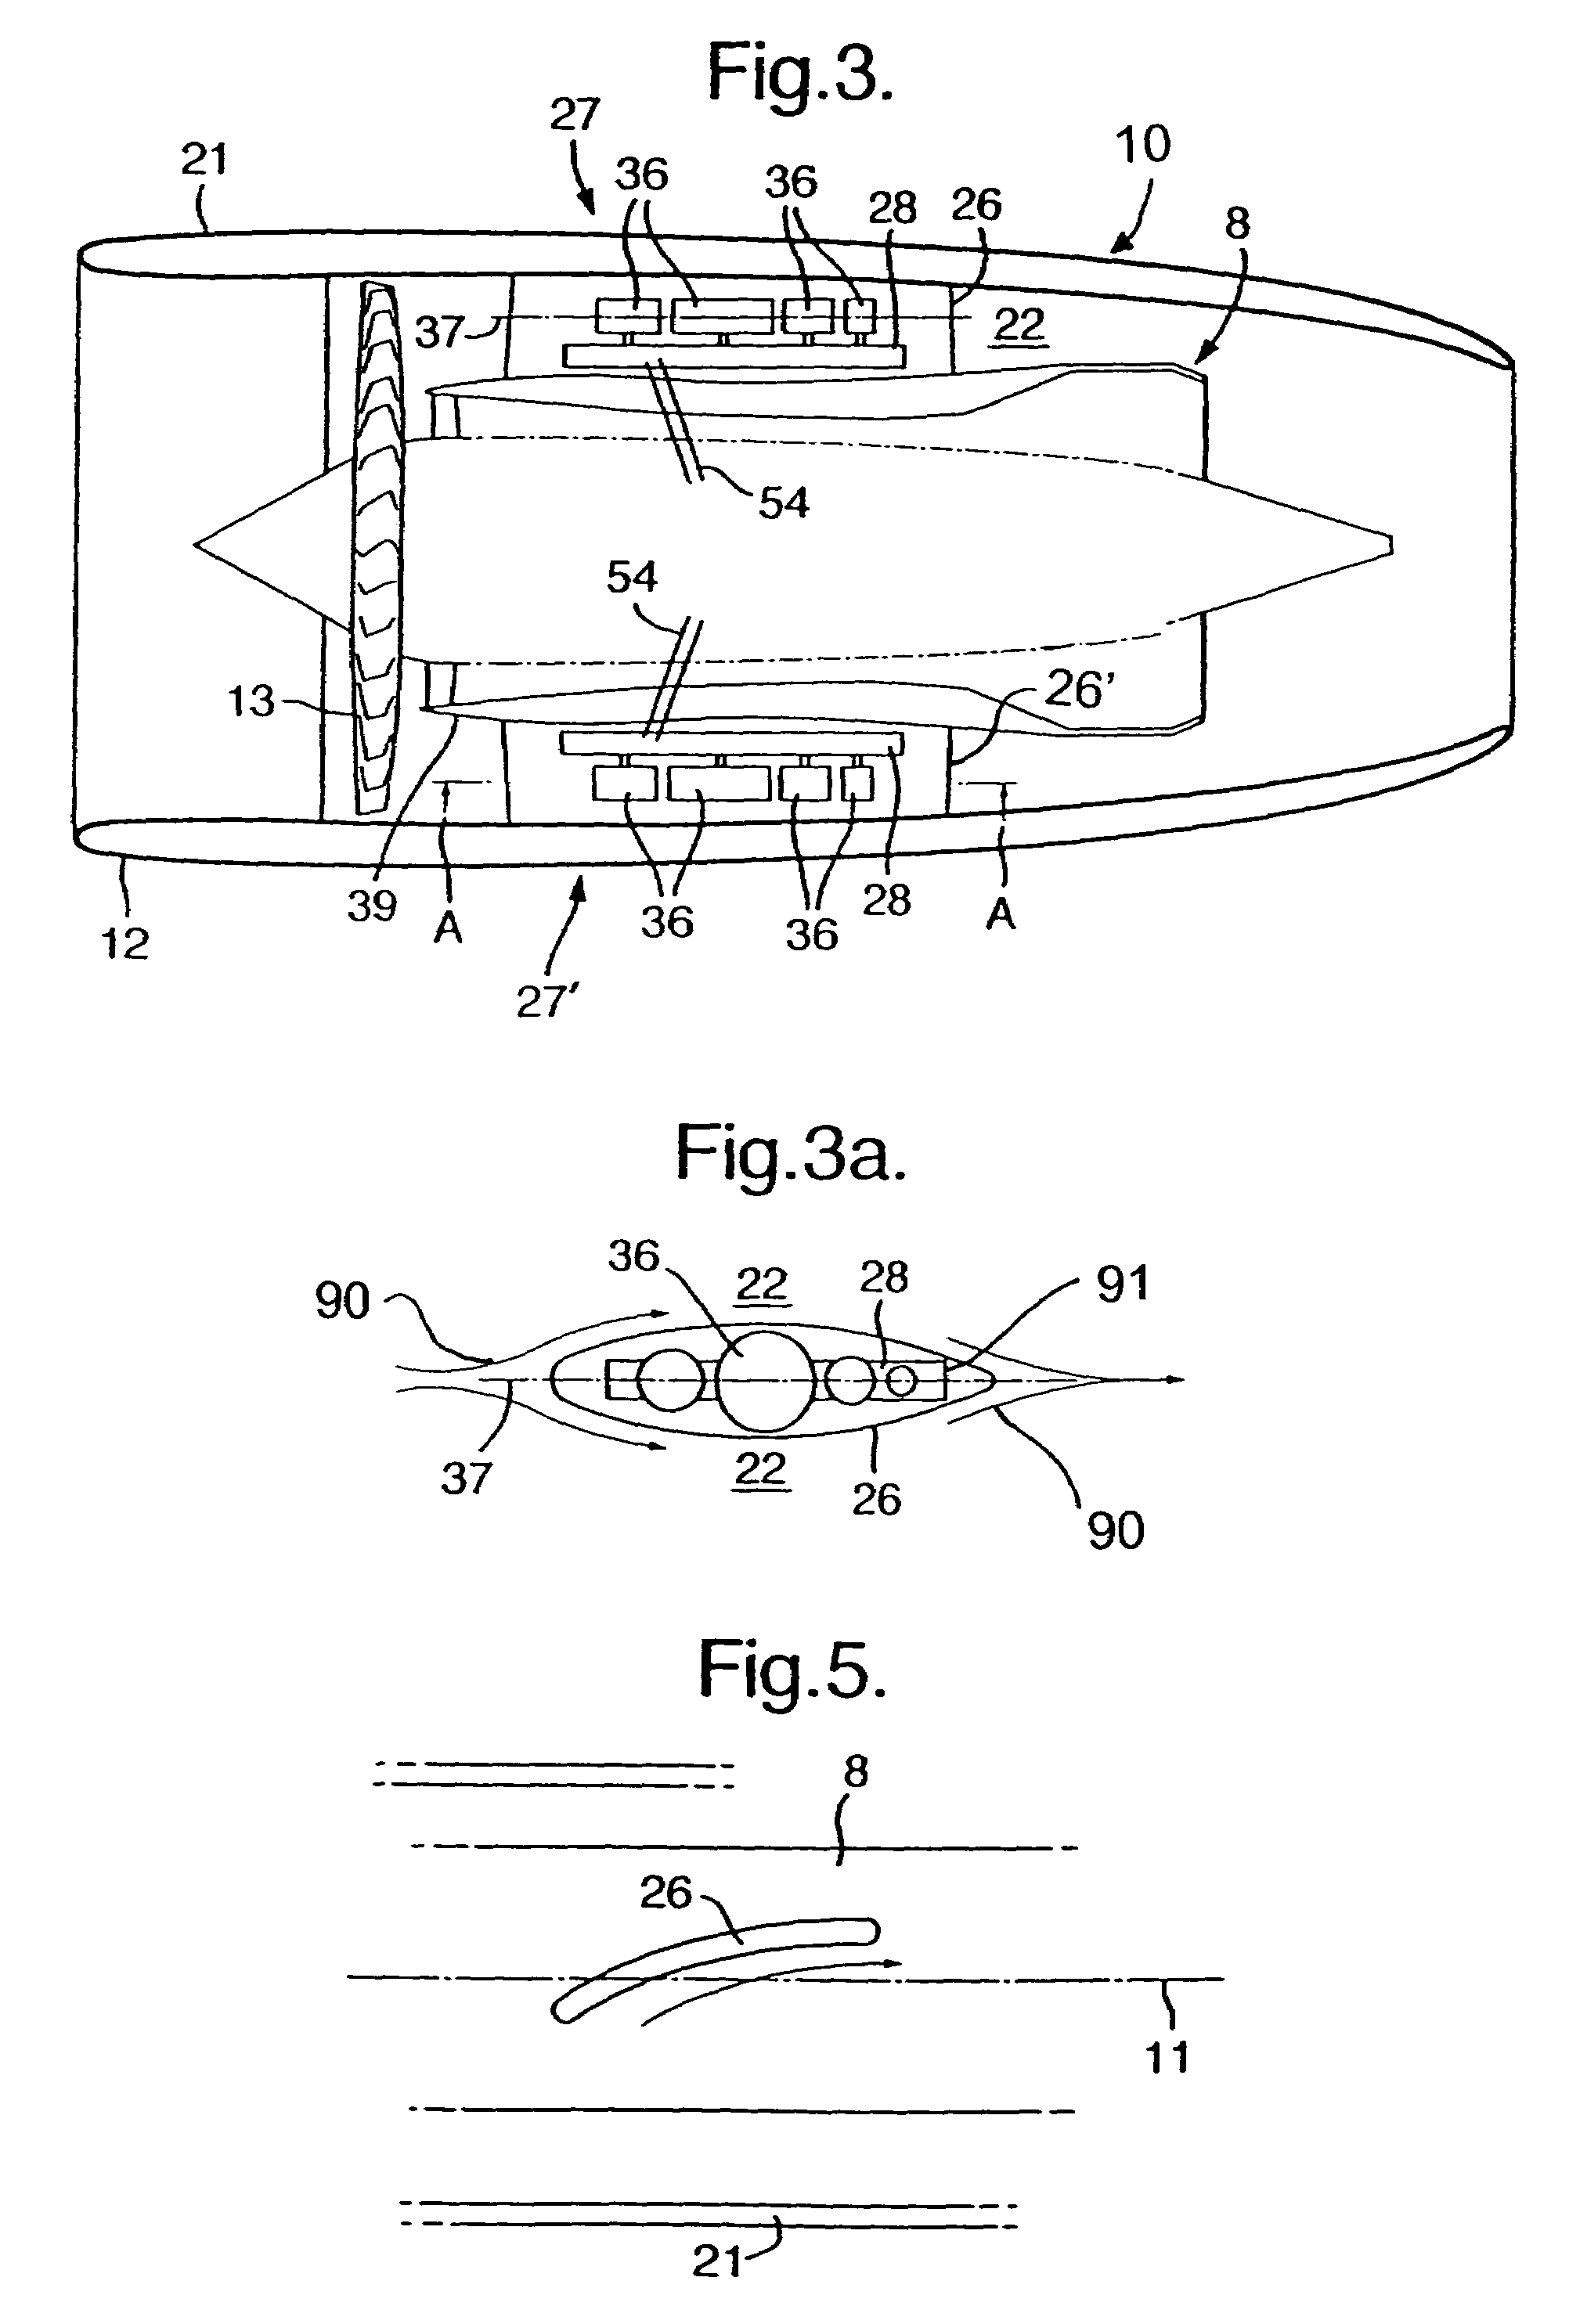 Aircraft engine arrangement